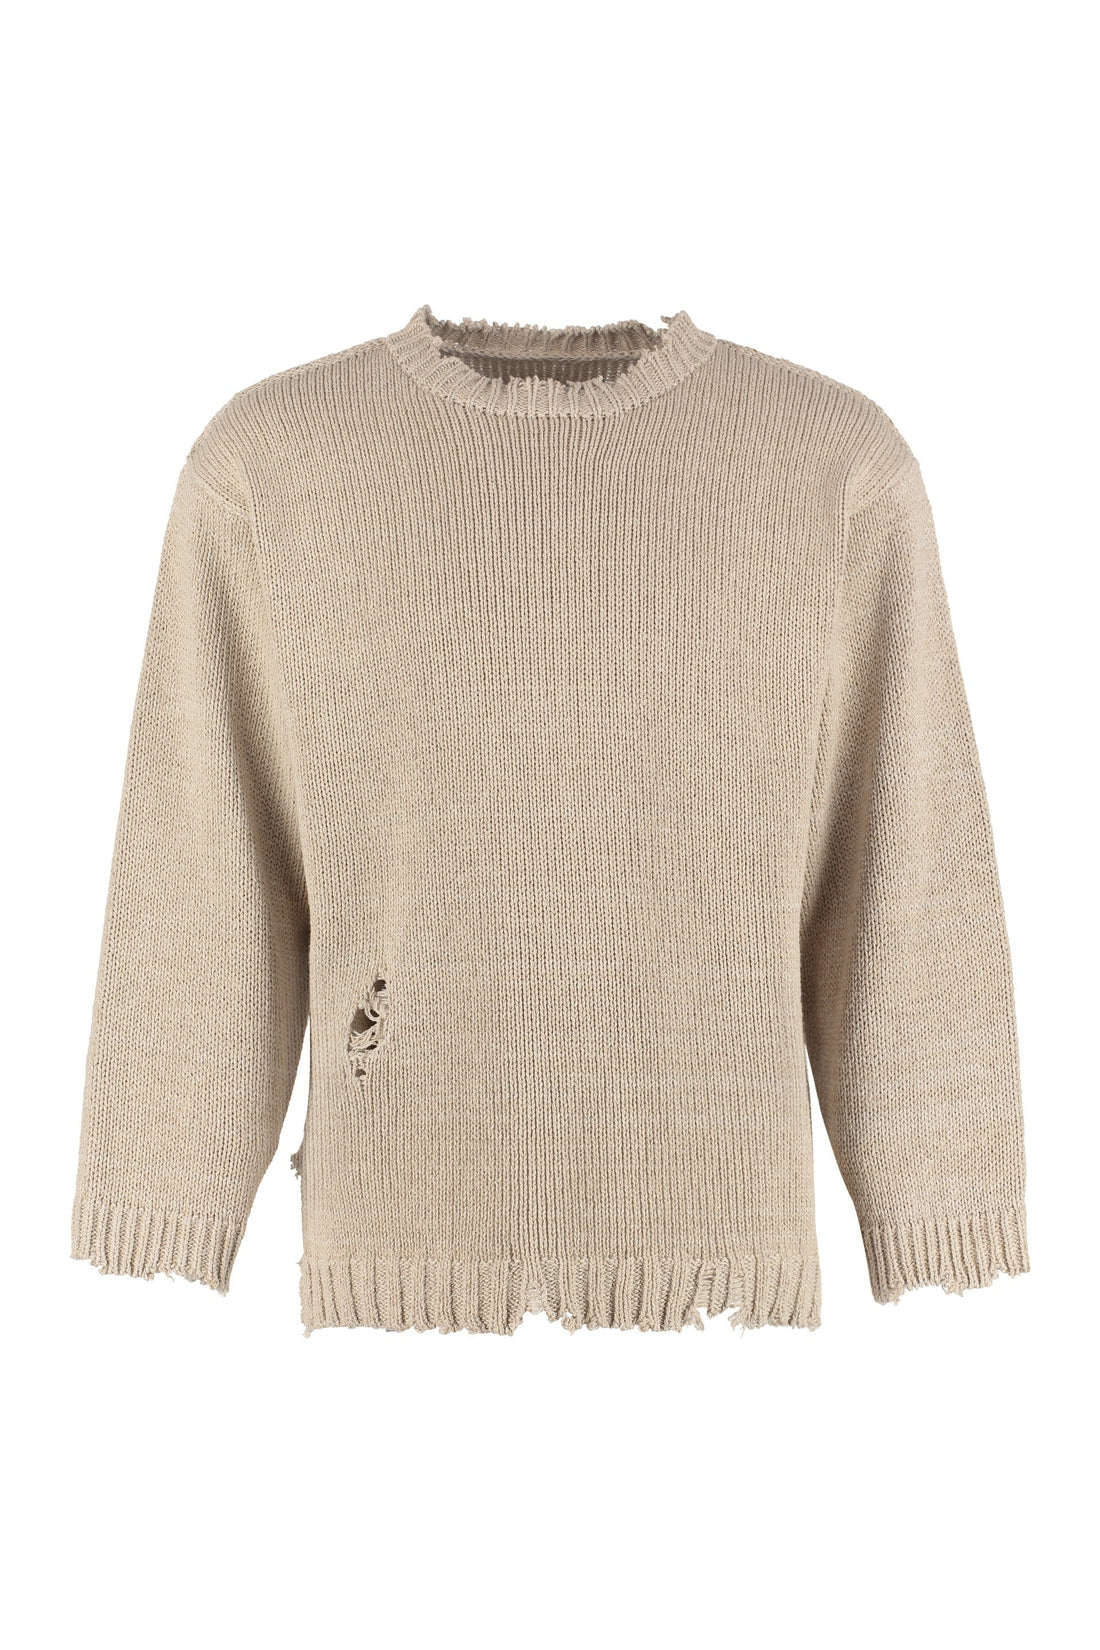 Maison Margiela-OUTLET-SALE-Distressed details sweater-ARCHIVIST